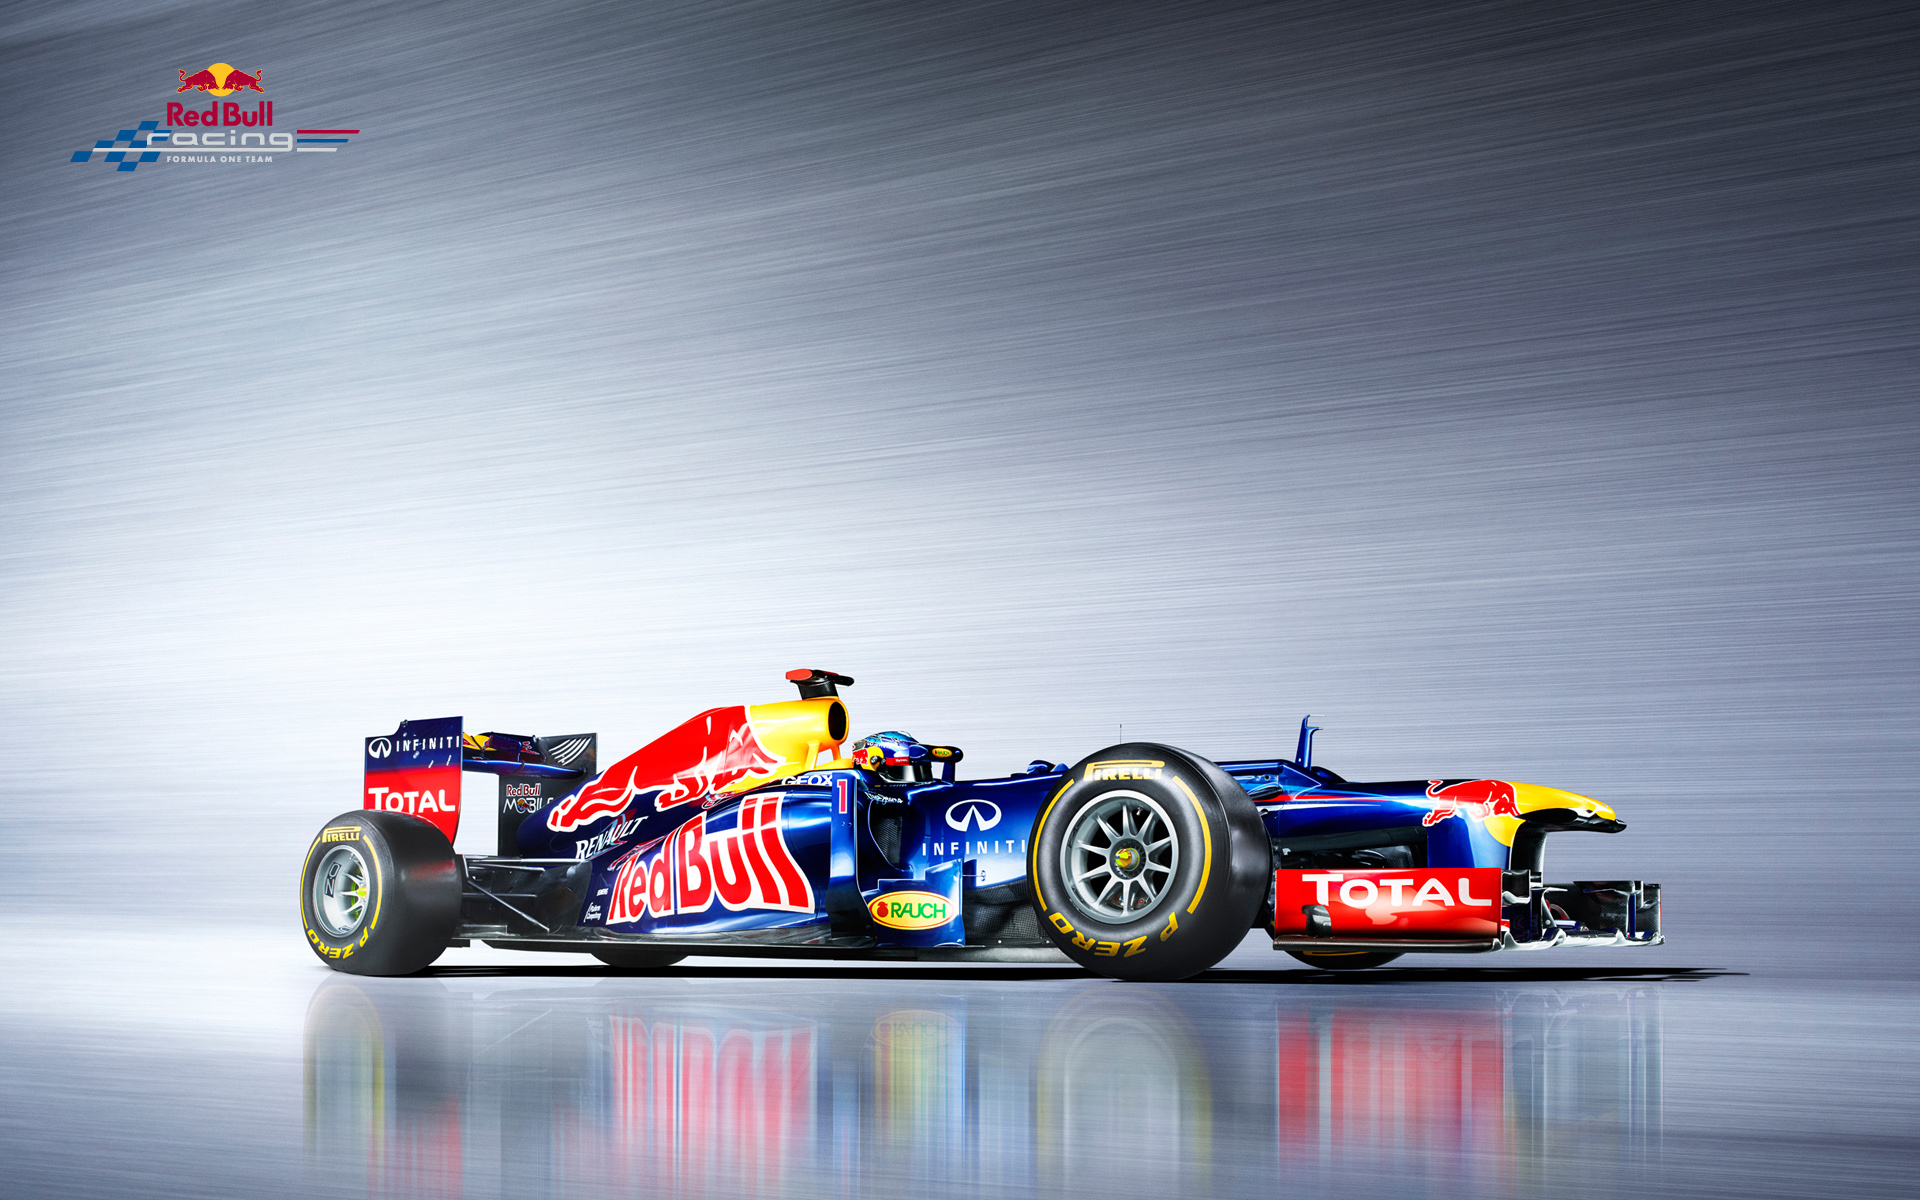  2012 Red Bull Racing RB8 Wallpaper.